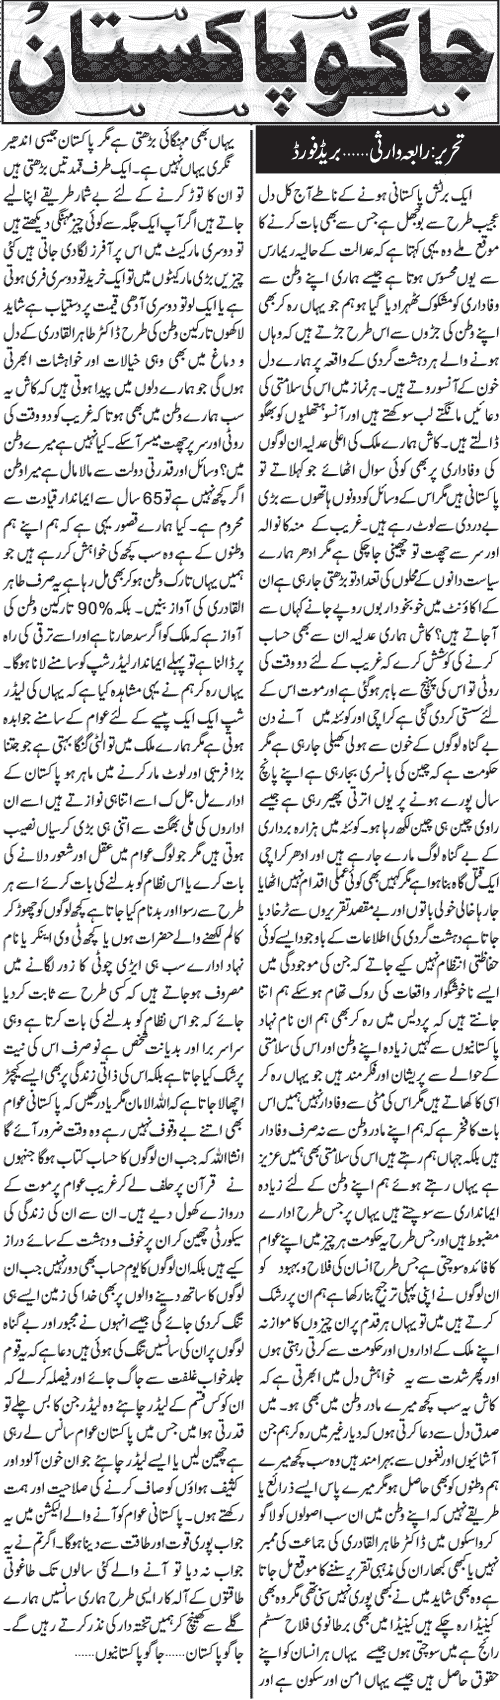 Minhaj-ul-Quran  Print Media Coverage Daily Jang London - Rabia Warsi